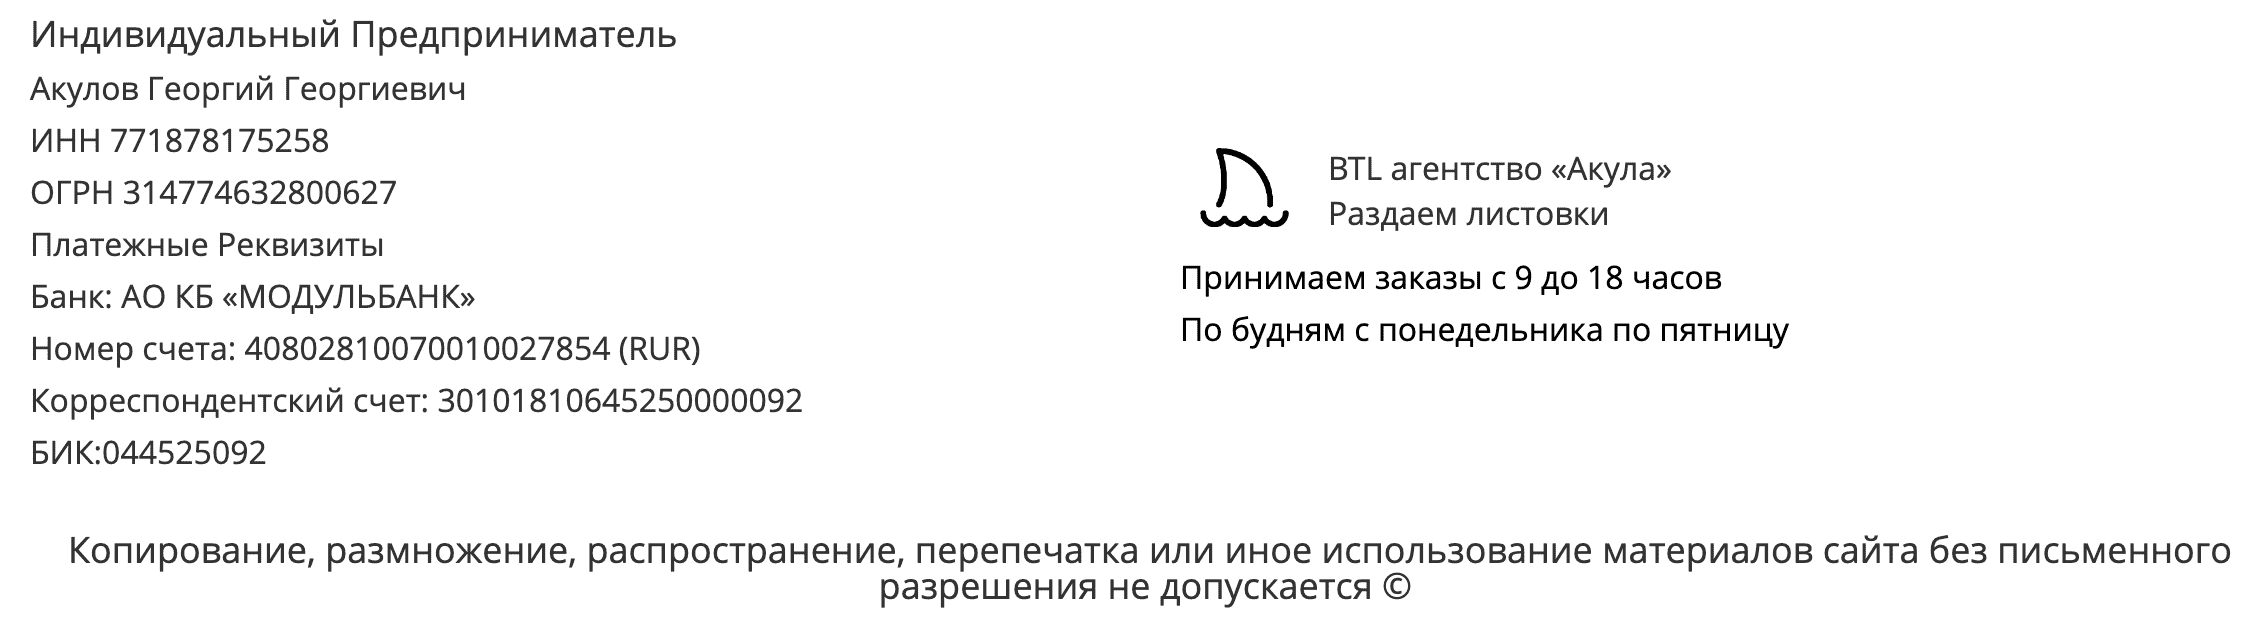 Реквизиты агентства по раздаче листовок Козьмодемьянск